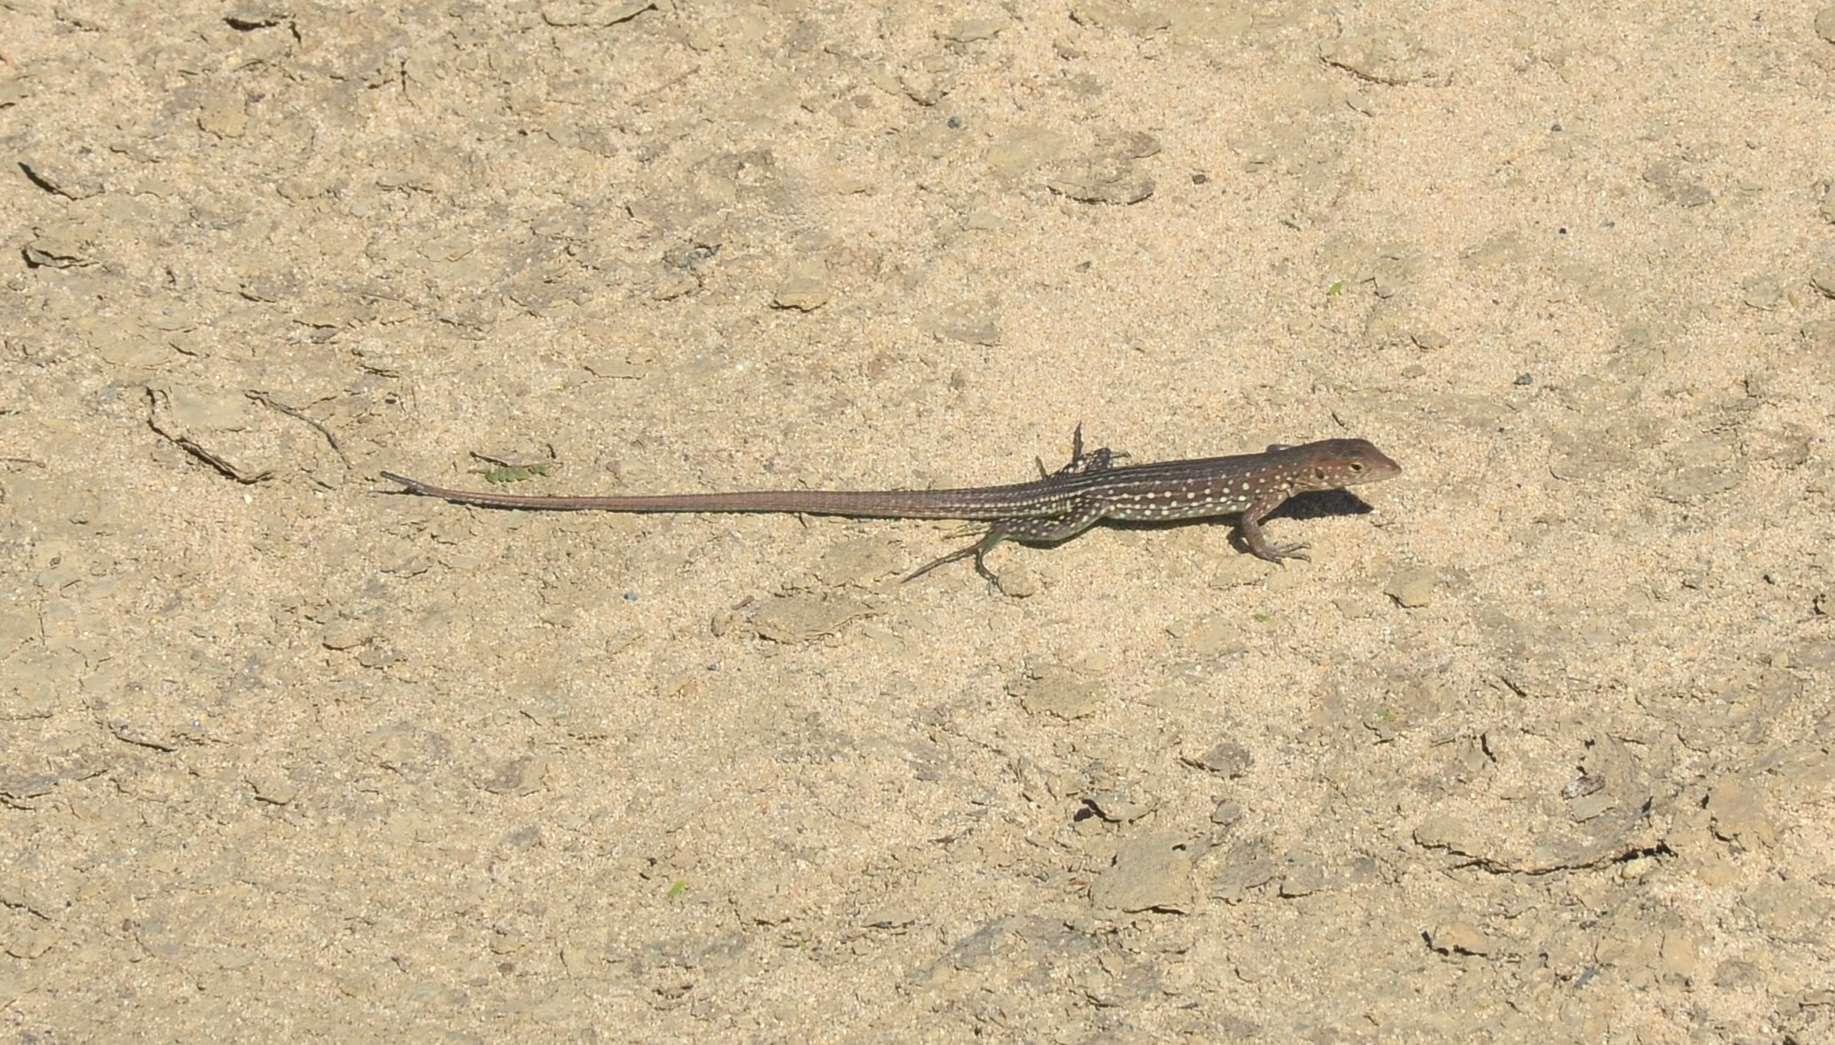 Lizard at the Sasarawichi Dunes